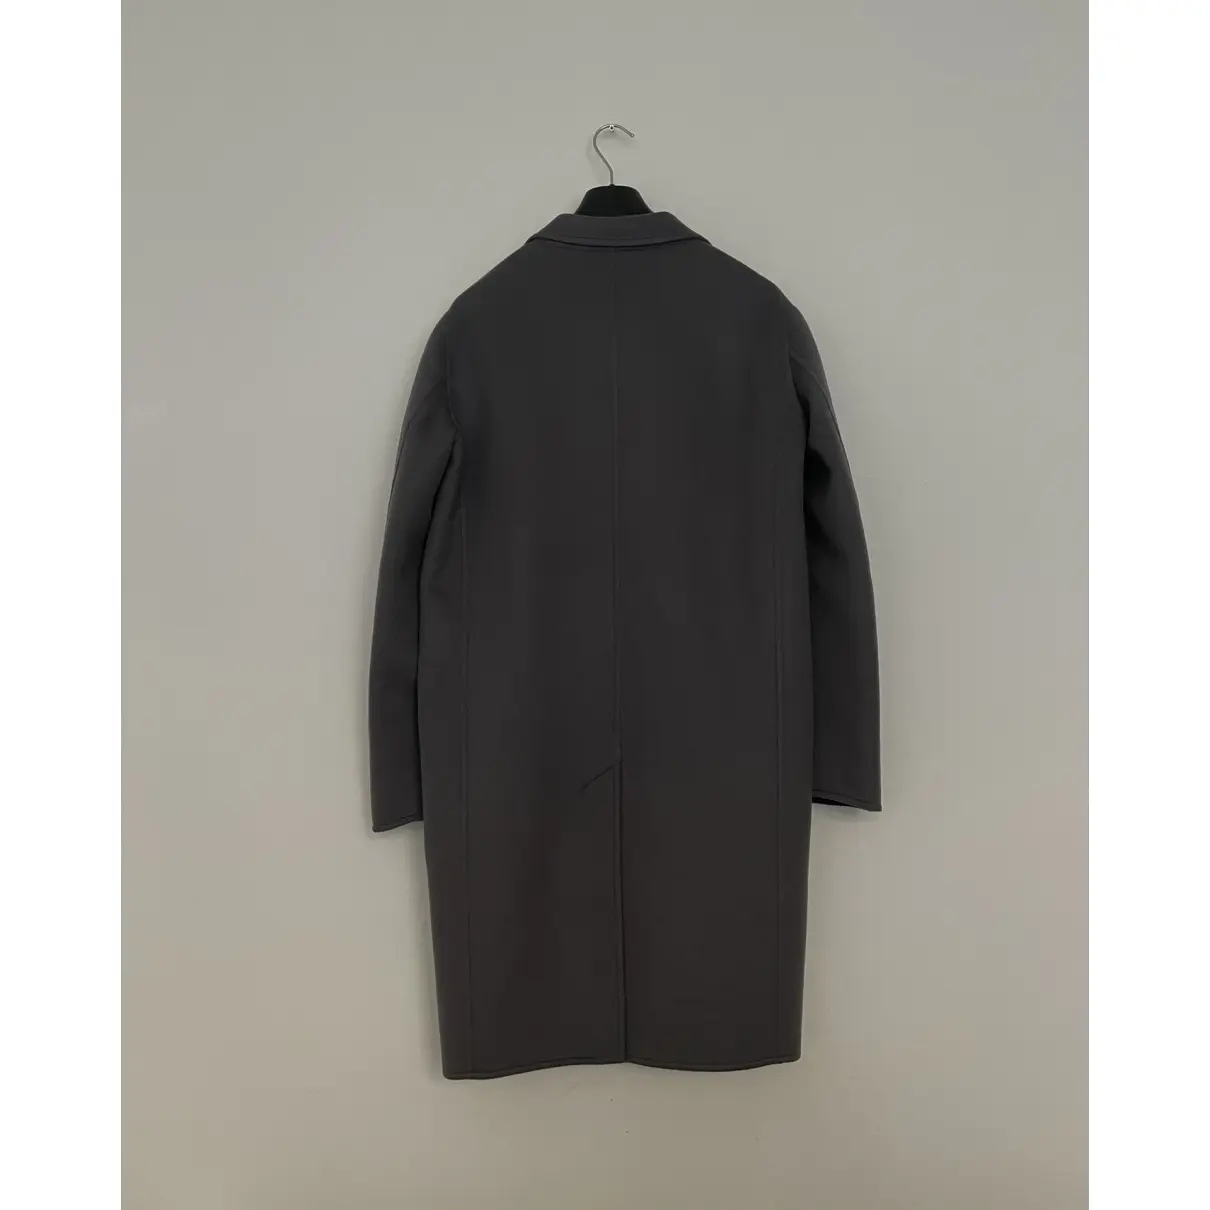 Buy Celine Cashmere coat online